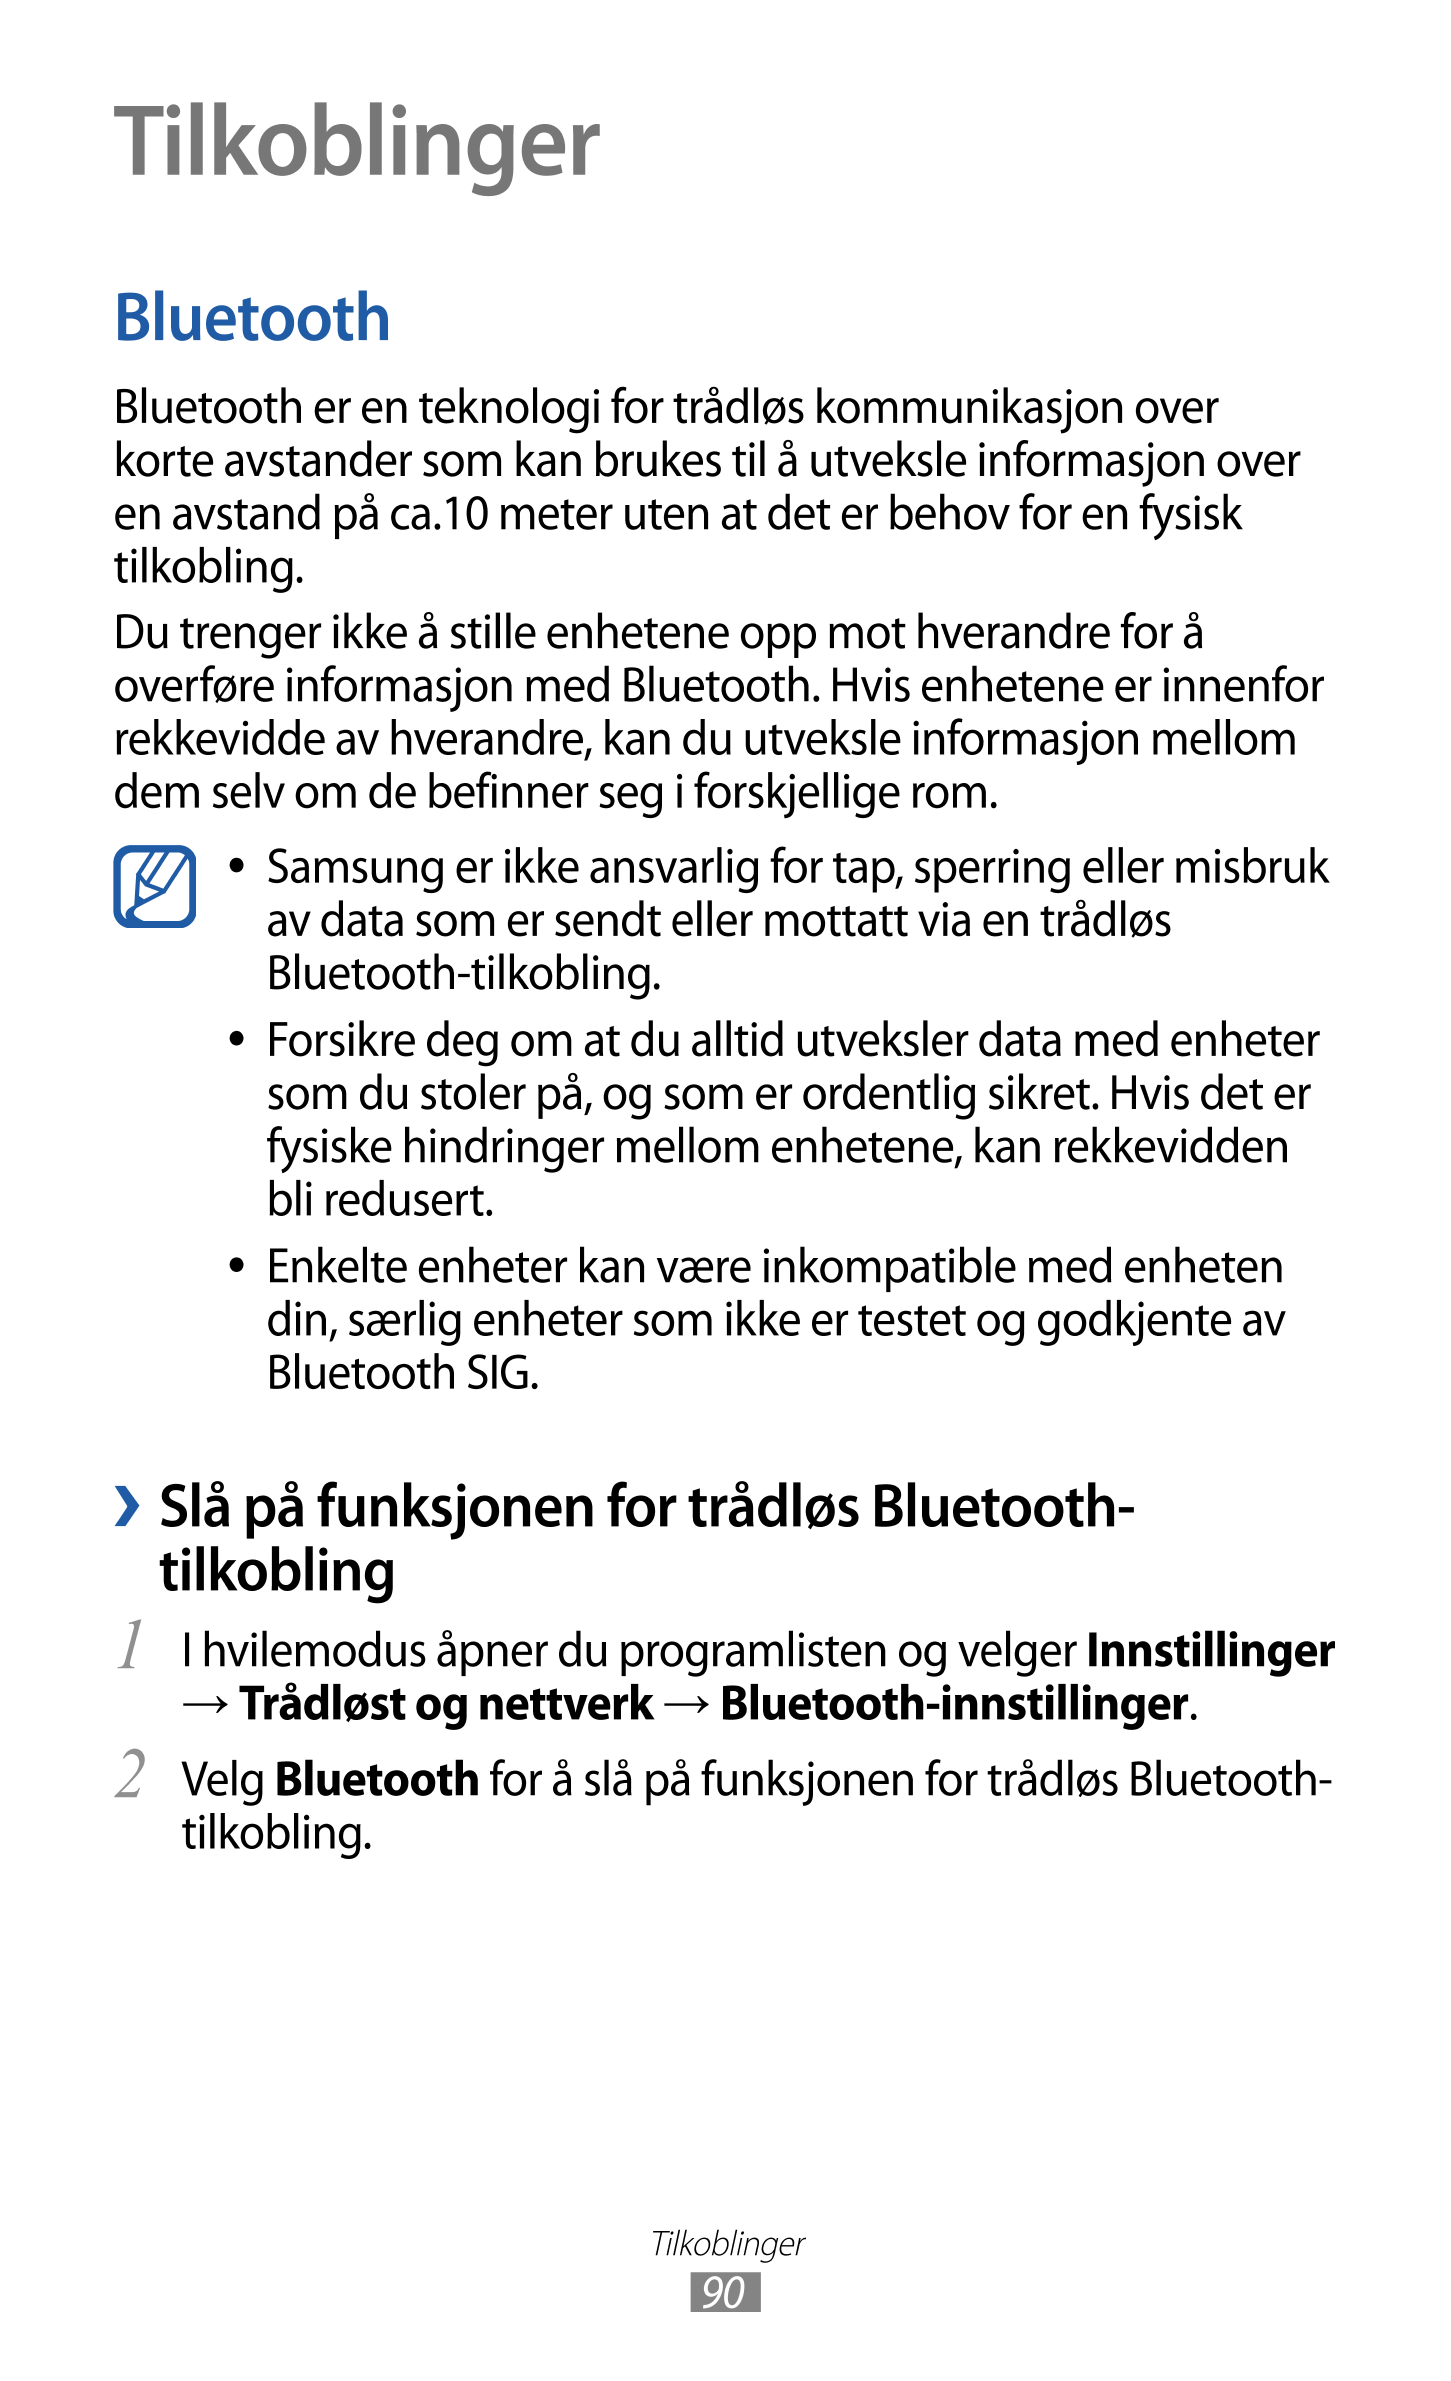 Tilkoblinger
Bluetooth
Bluetooth er en teknologi for trådløs kommunikasjon over 
korte avstander som kan brukes til å utveksle i